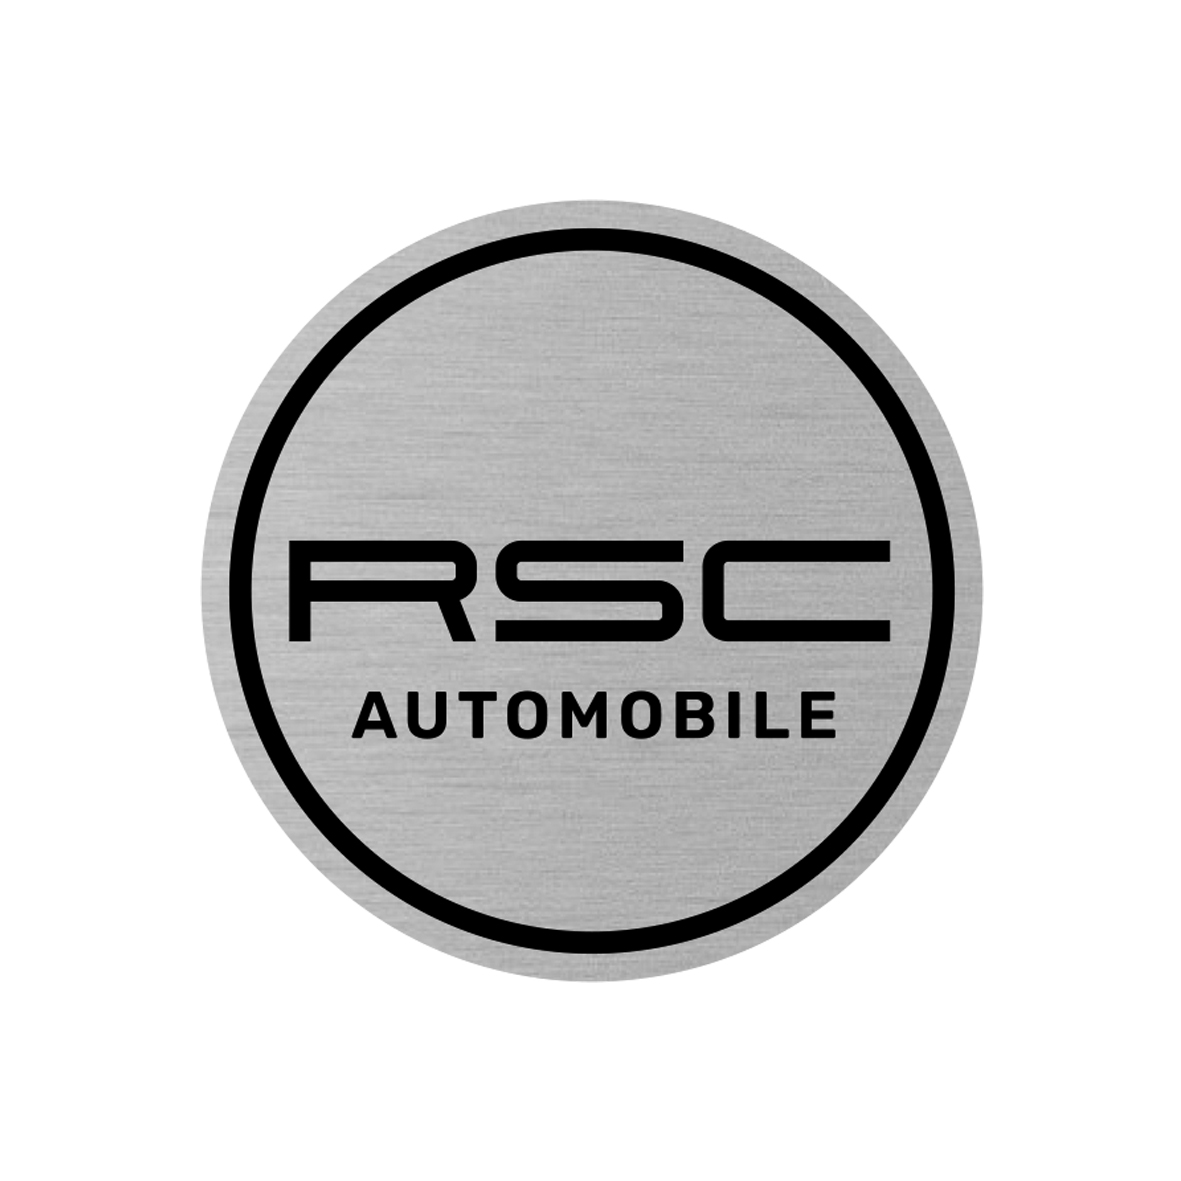 RSC Automobile